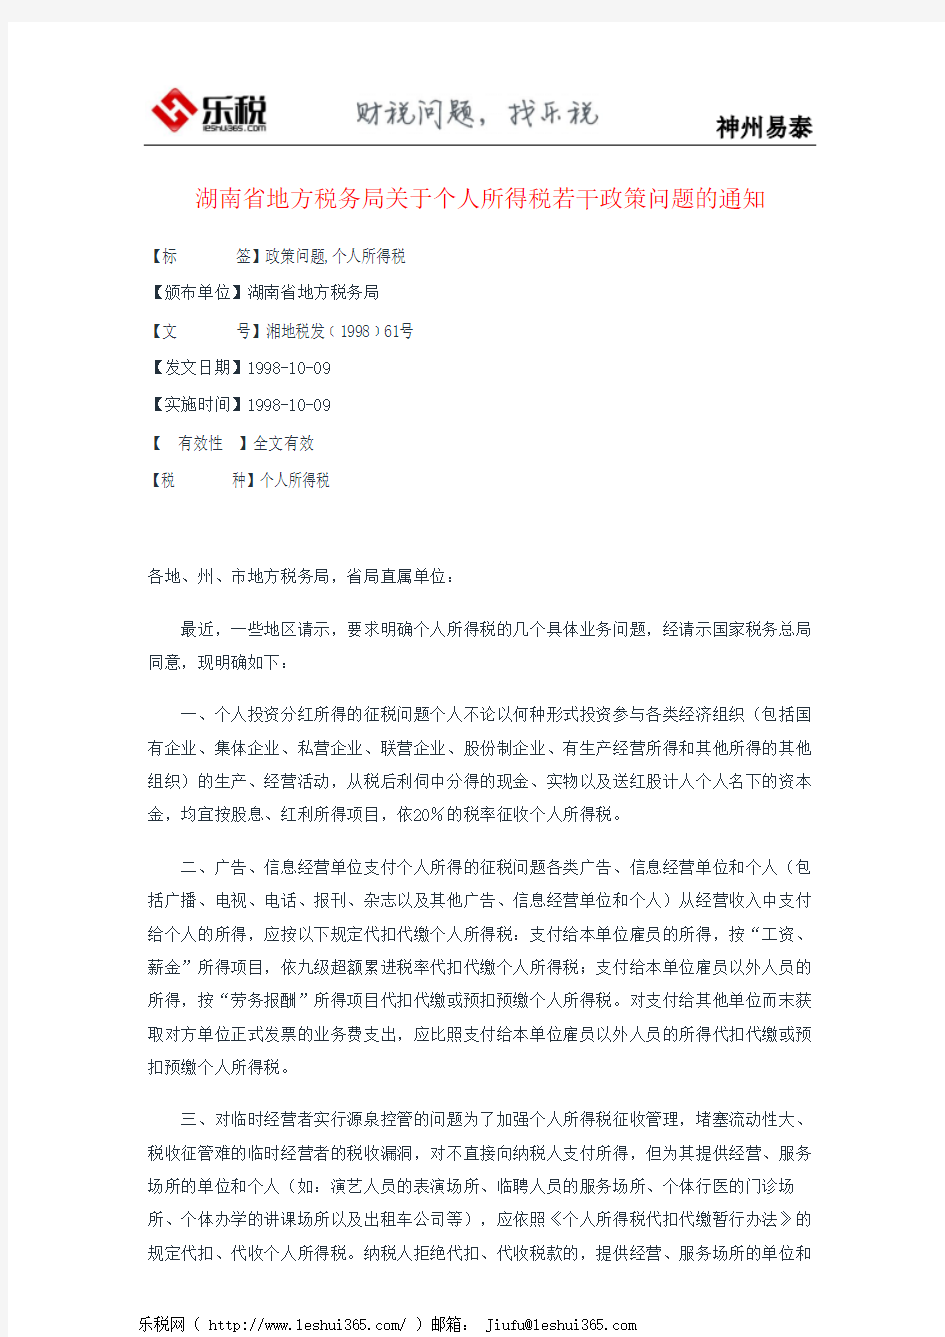 湖南省地方税务局关于个人所得税若干政策问题的通知